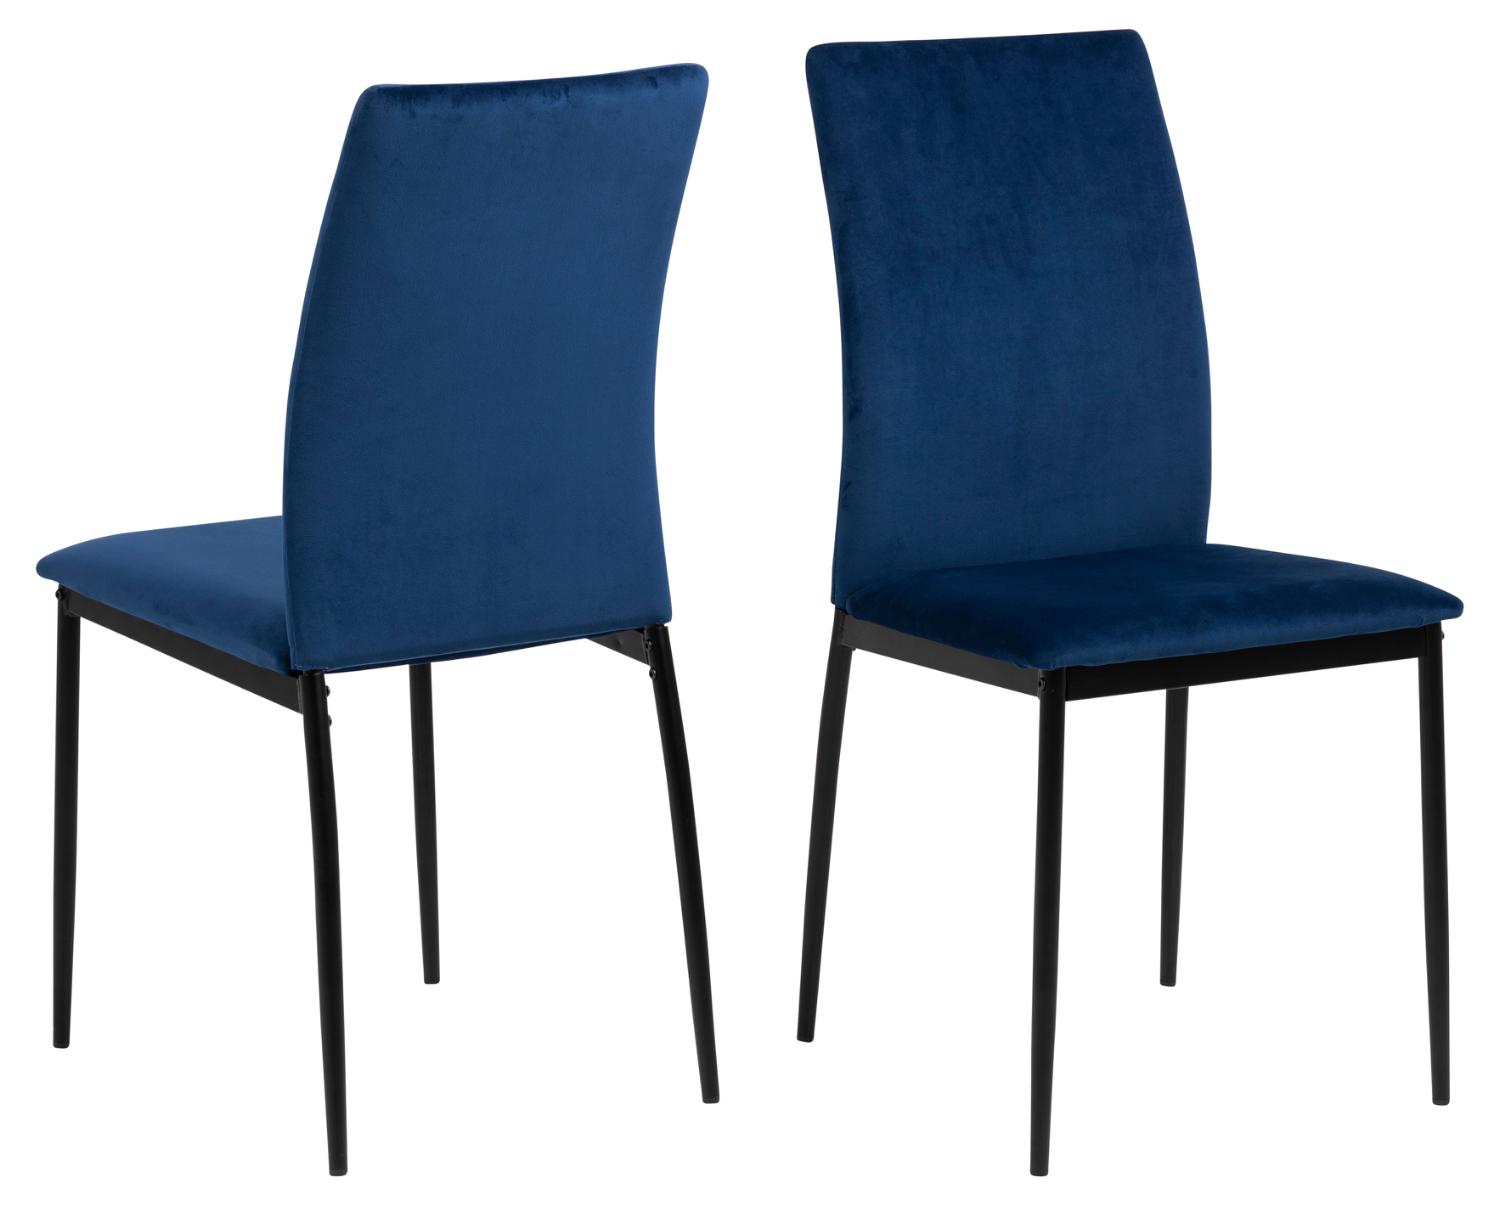 ACT NORDIC Demina spisebordsstol - mørkeblå polyester og sort metal